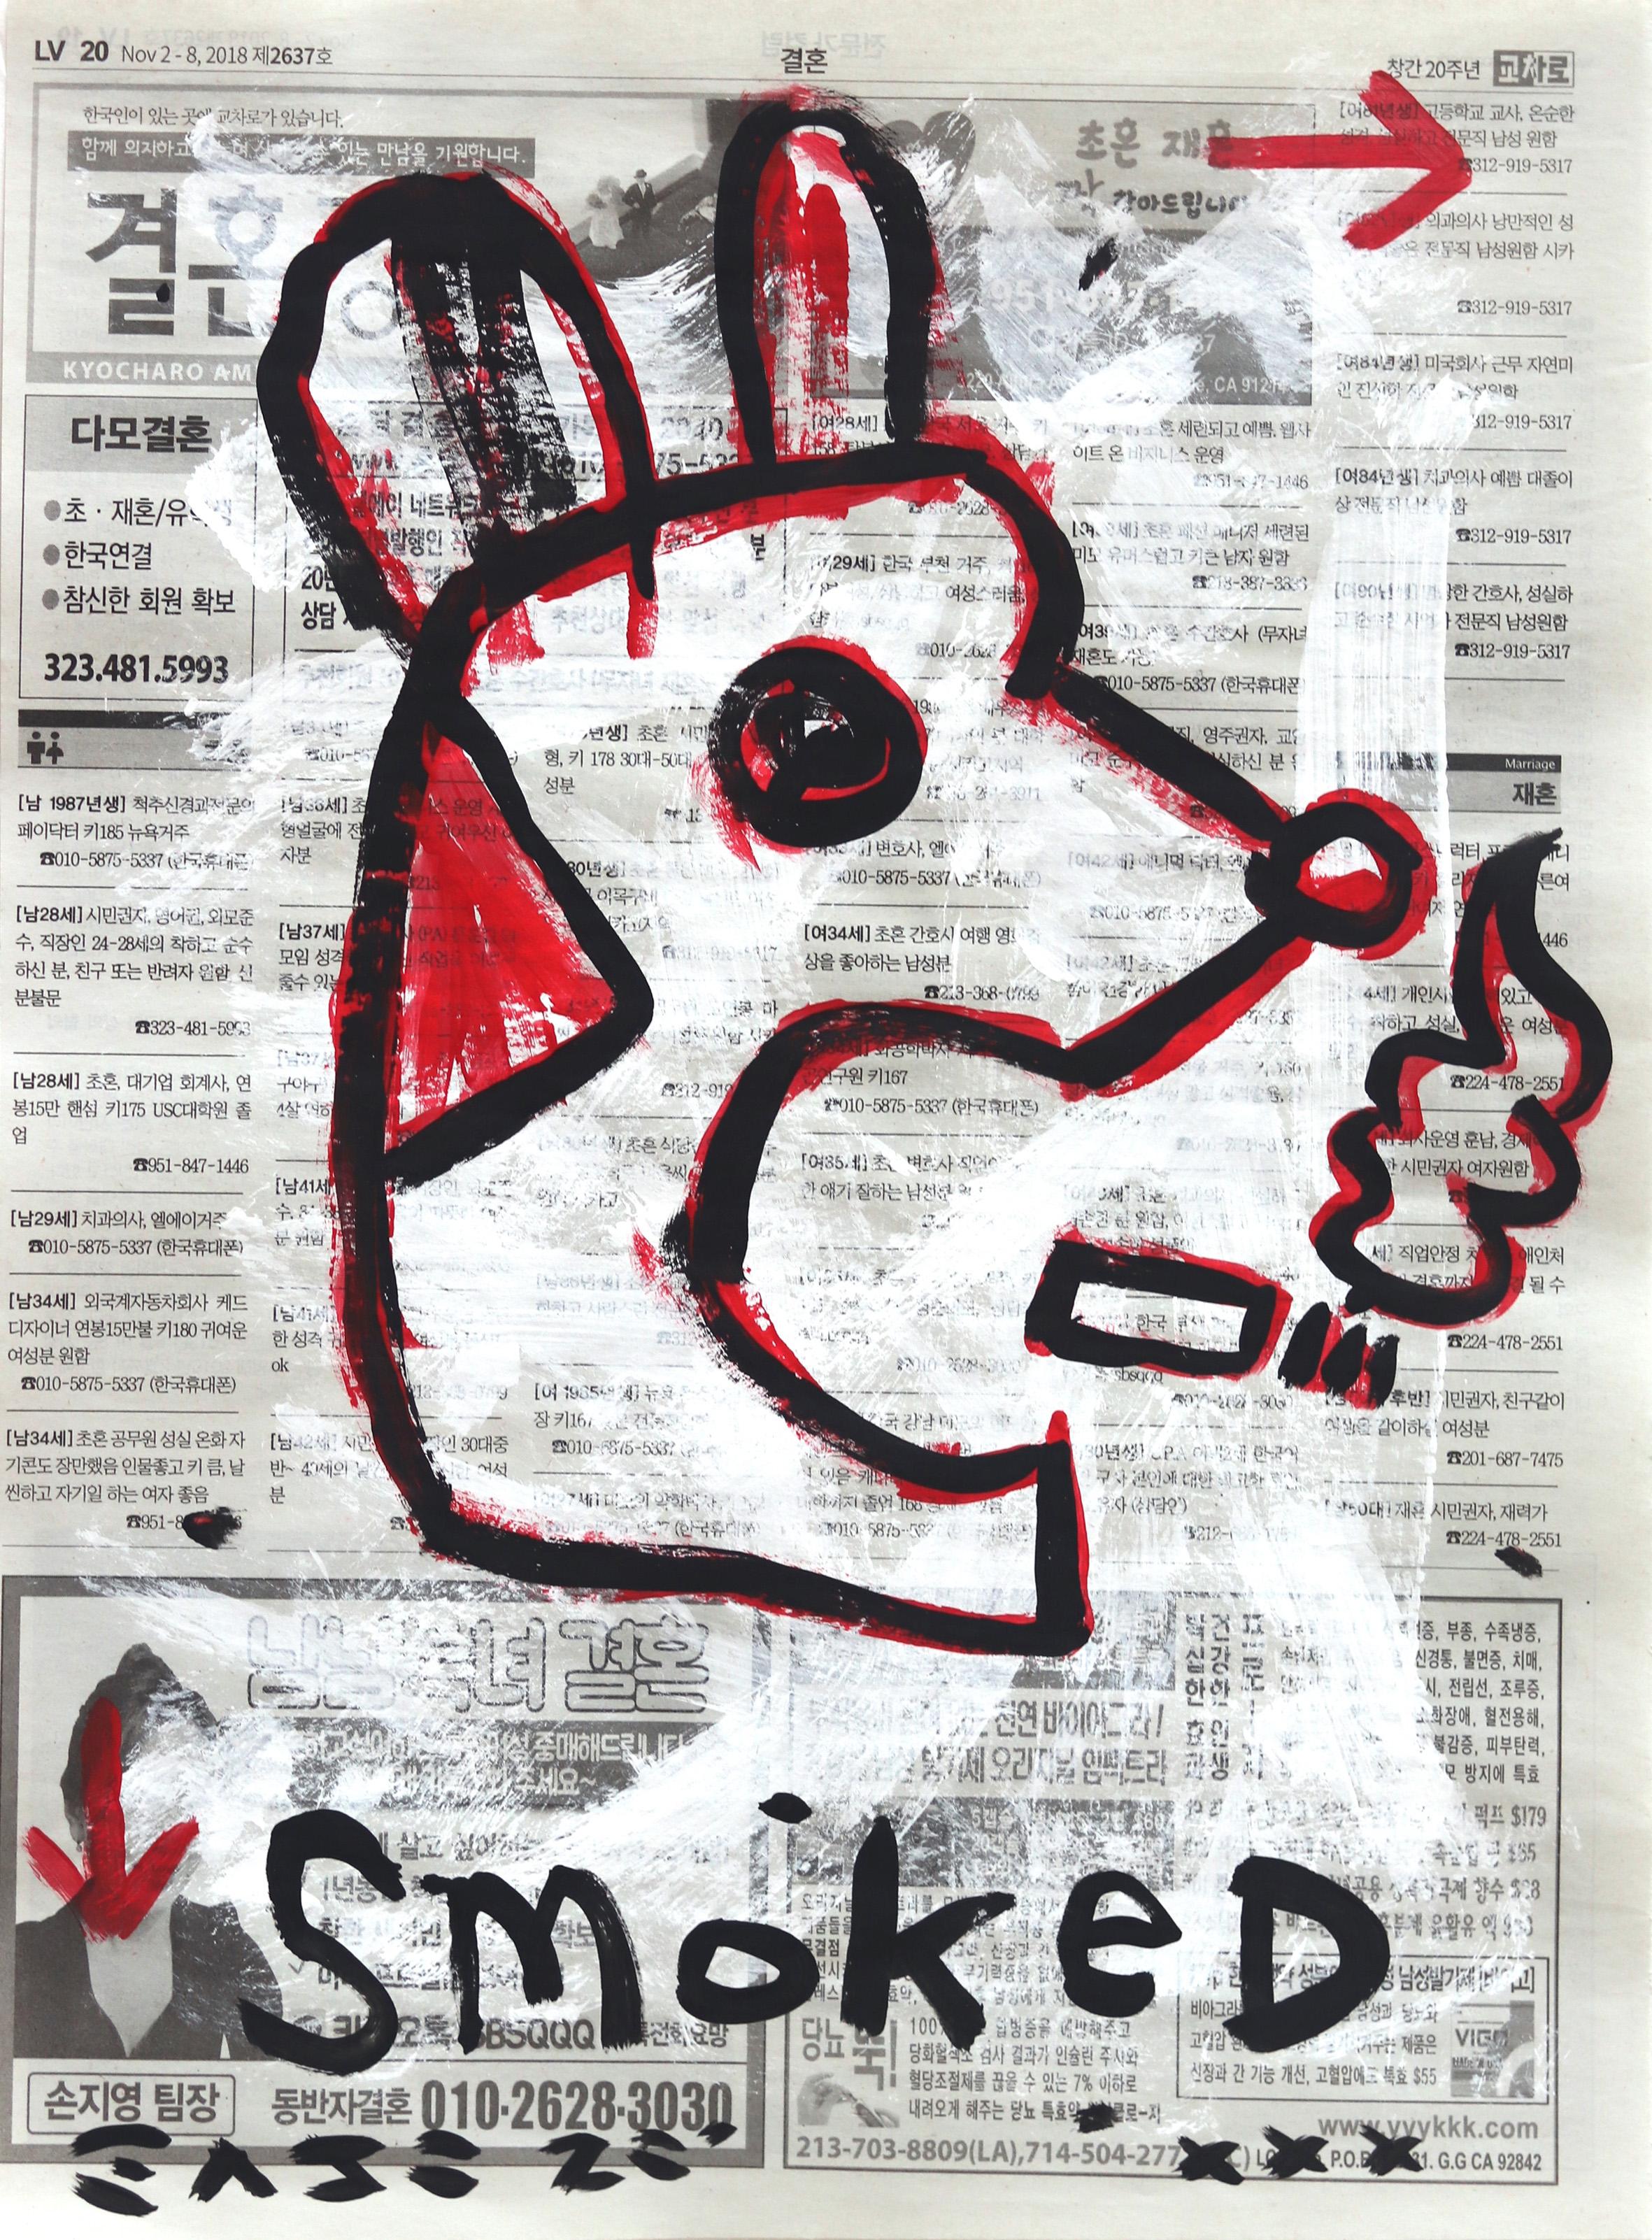 Smoked Like BBQ - Mixed Media Art by Gary John